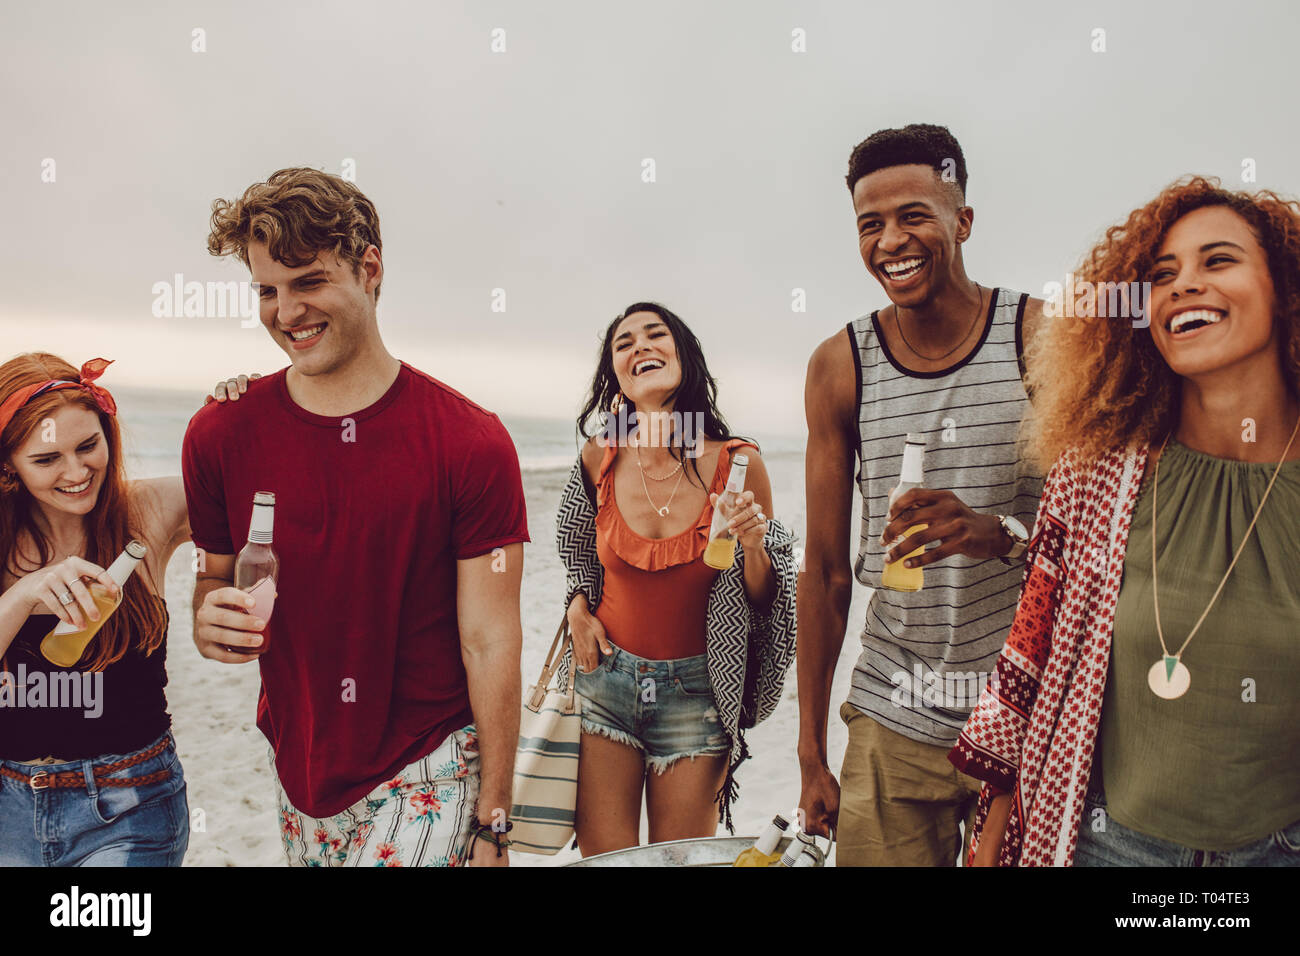 Grupo de personas llevando tina por parte de bebidas en la playa. Diversos grupos de jóvenes caminando al aire libre y tomar una copa. Foto de stock